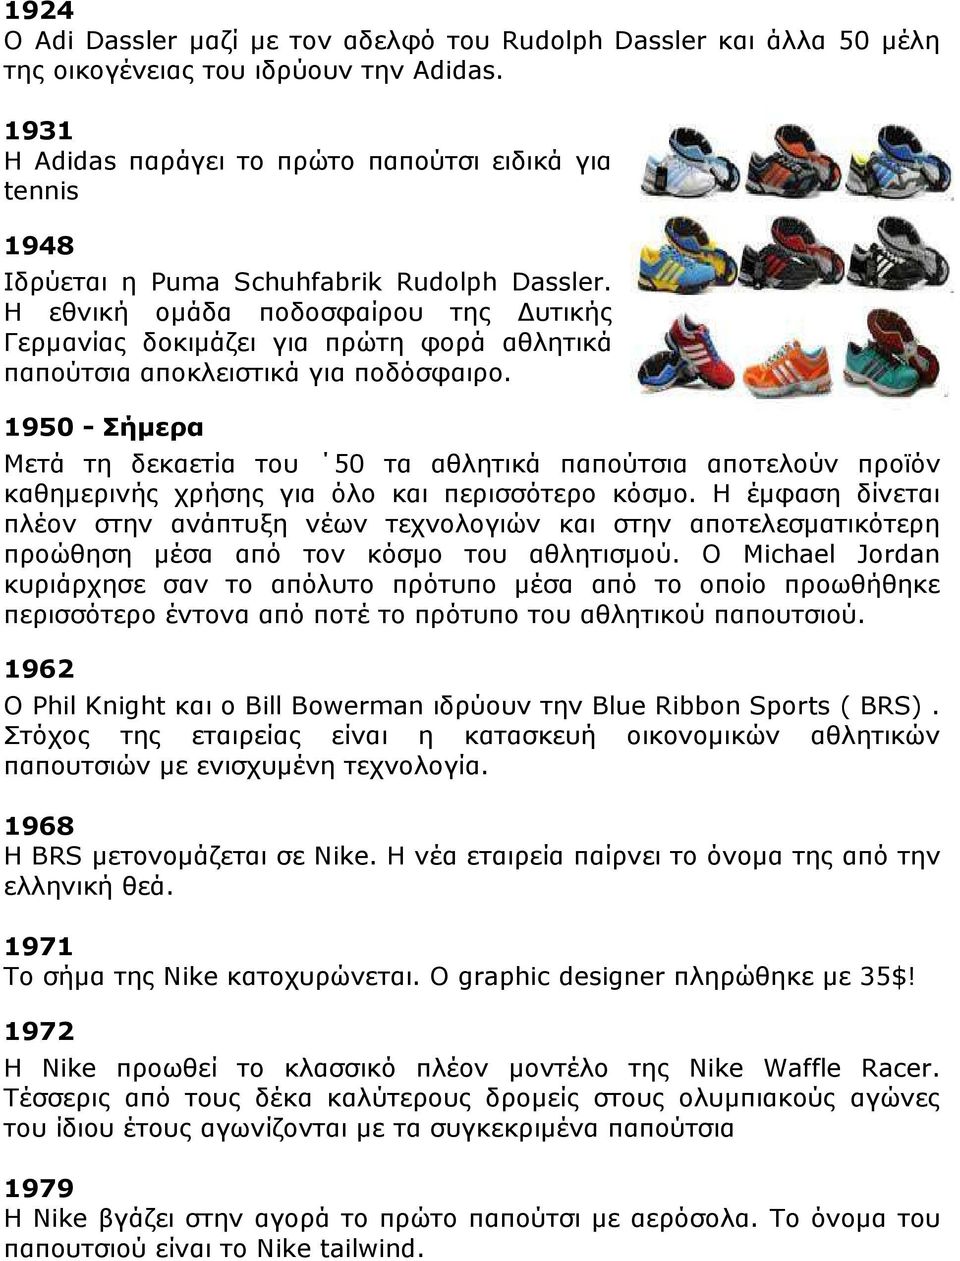 Η εθνική οµάδα ποδοσφαίρου της υτικής Γερµανίας δοκιµάζει για πρώτη φορά αθλητικά παπούτσια αποκλειστικά για ποδόσφαιρο.